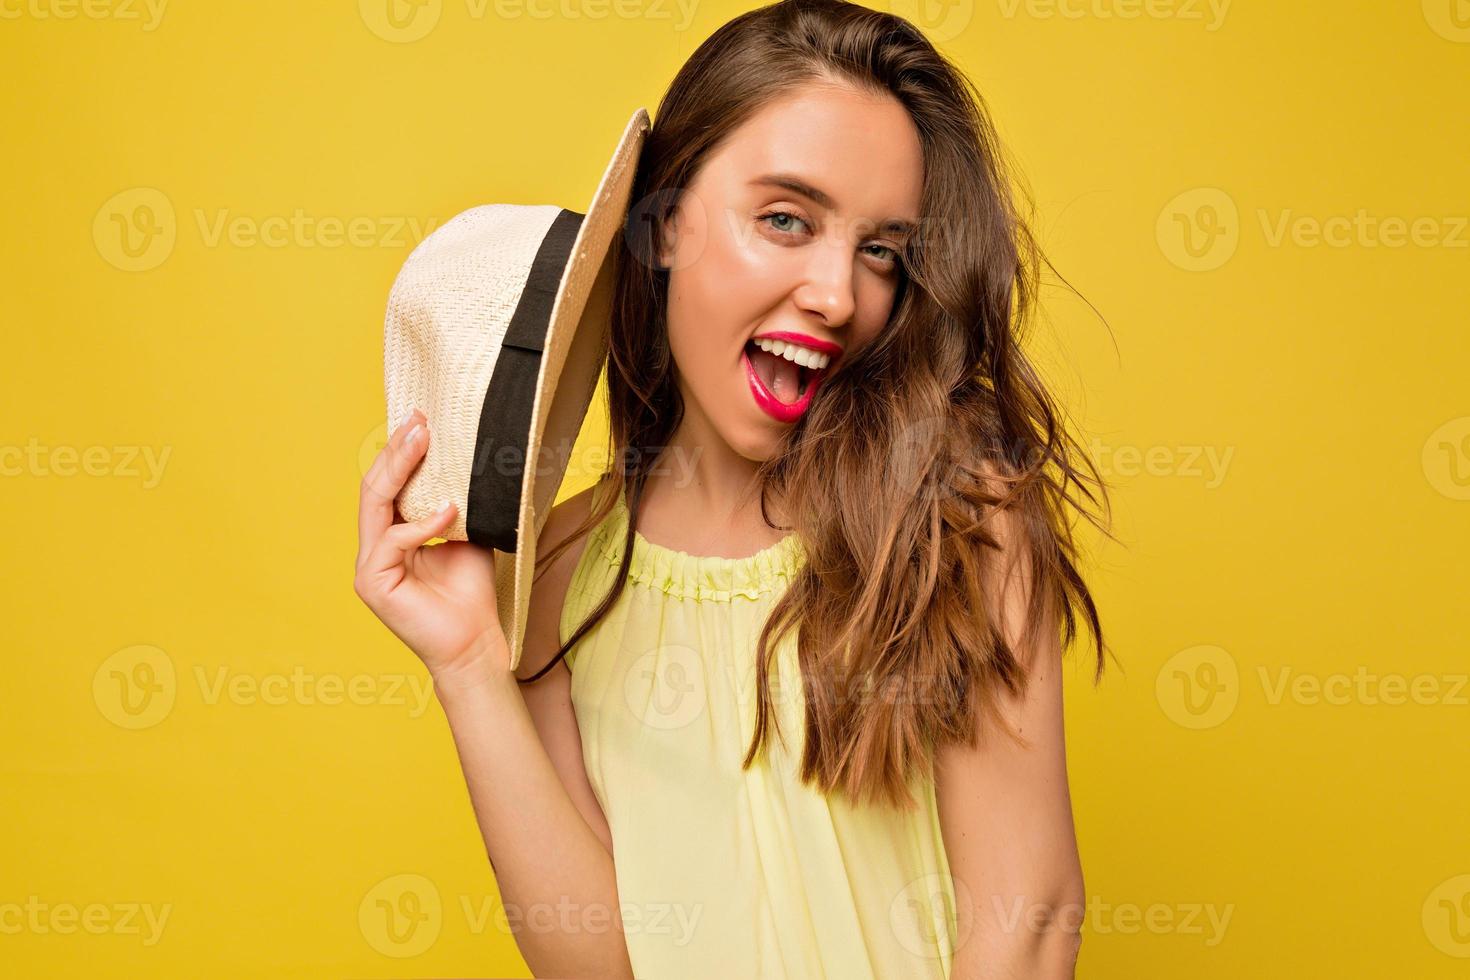 incrível mulher de cabelos compridos vestido de verão brilhante posando com emoções expressivas, ela abriu o moush e segura o chapéu perto do rosto em fundo amarelo foto